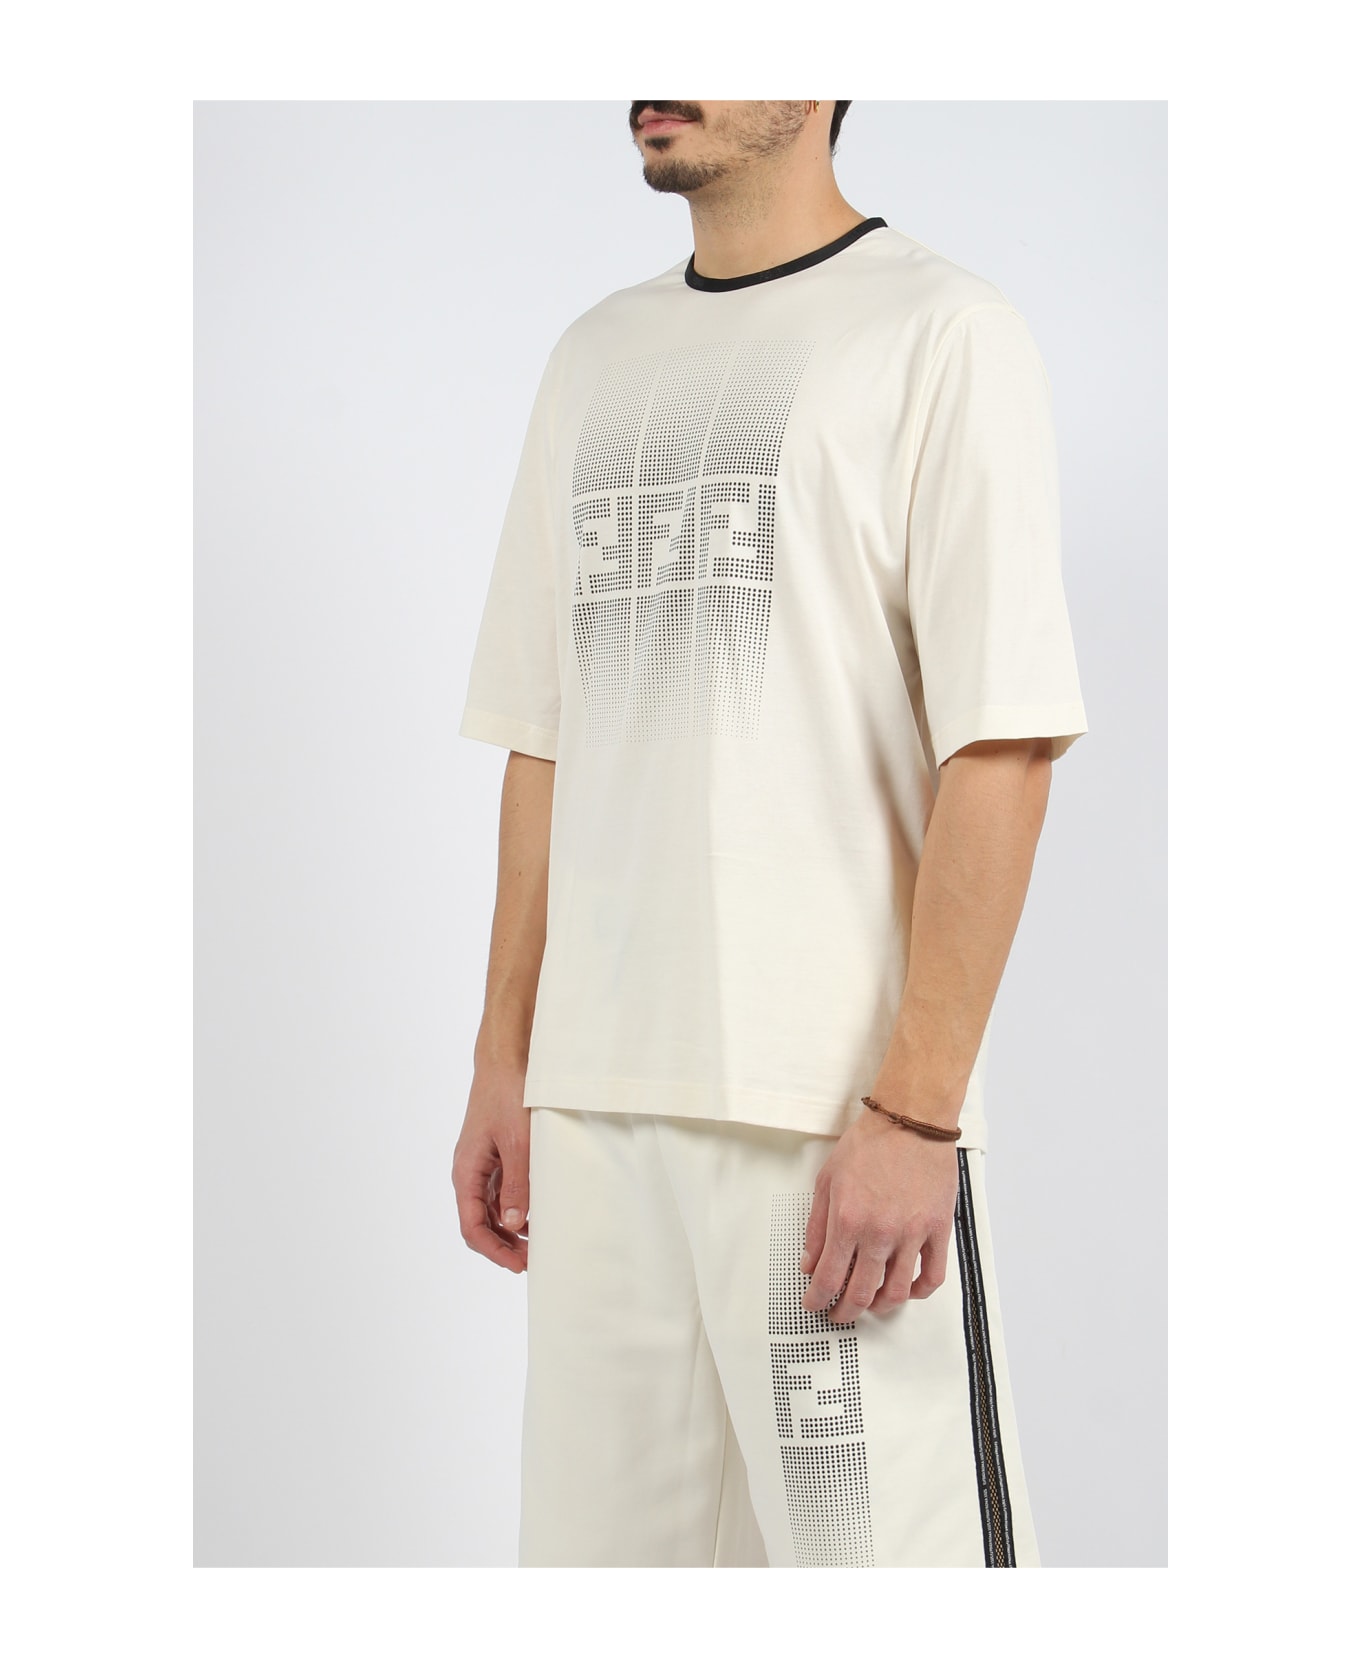 Fendi Gradient Ff T-shirt - White シャツ